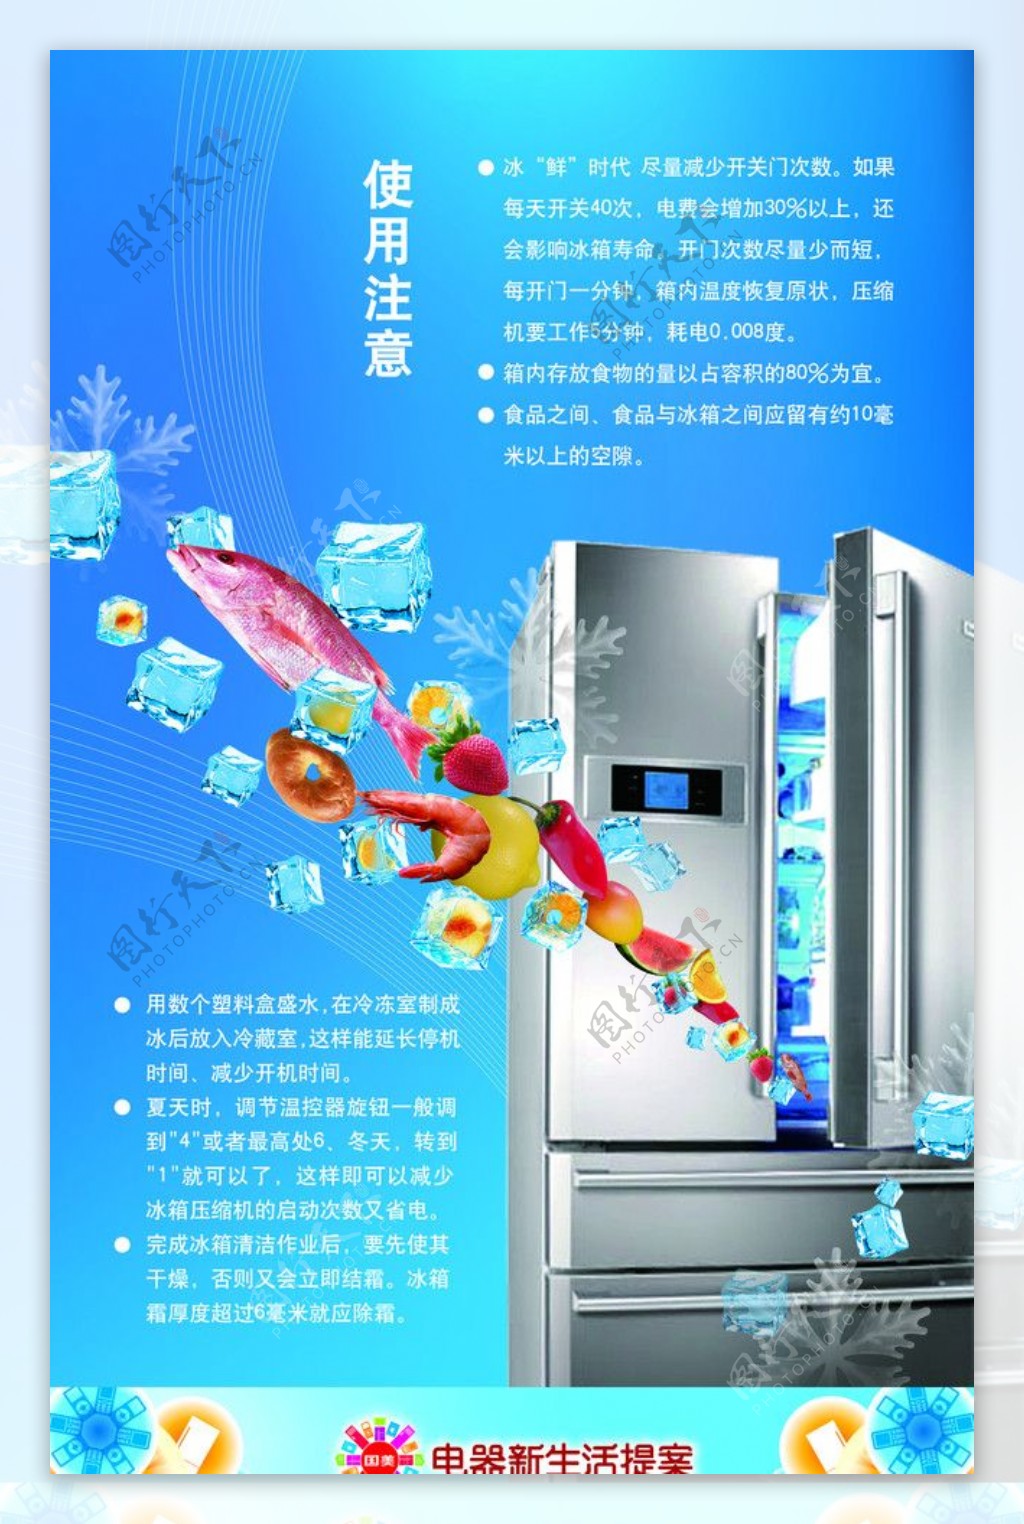 电器生活提案冰箱图片